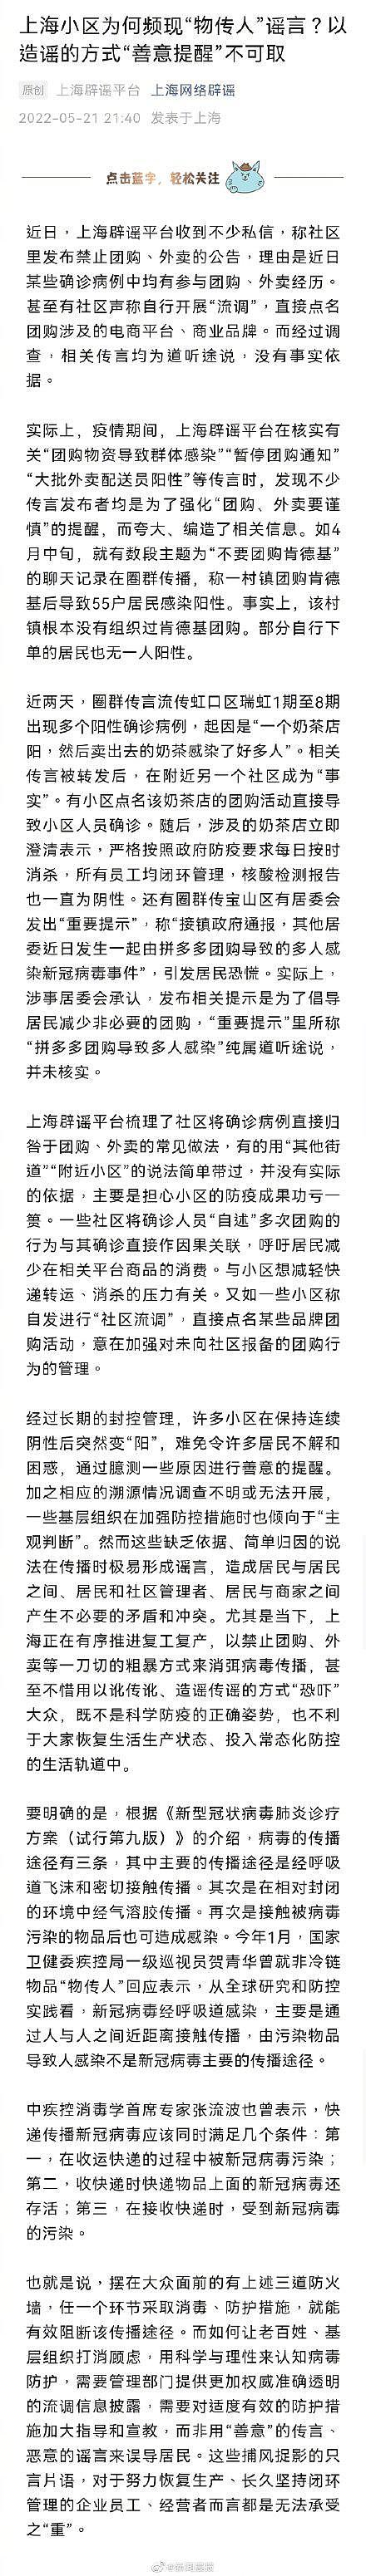 上海小区为何频现“物传人”谣言？以造谣的方式“善意提醒”不可取 - 1